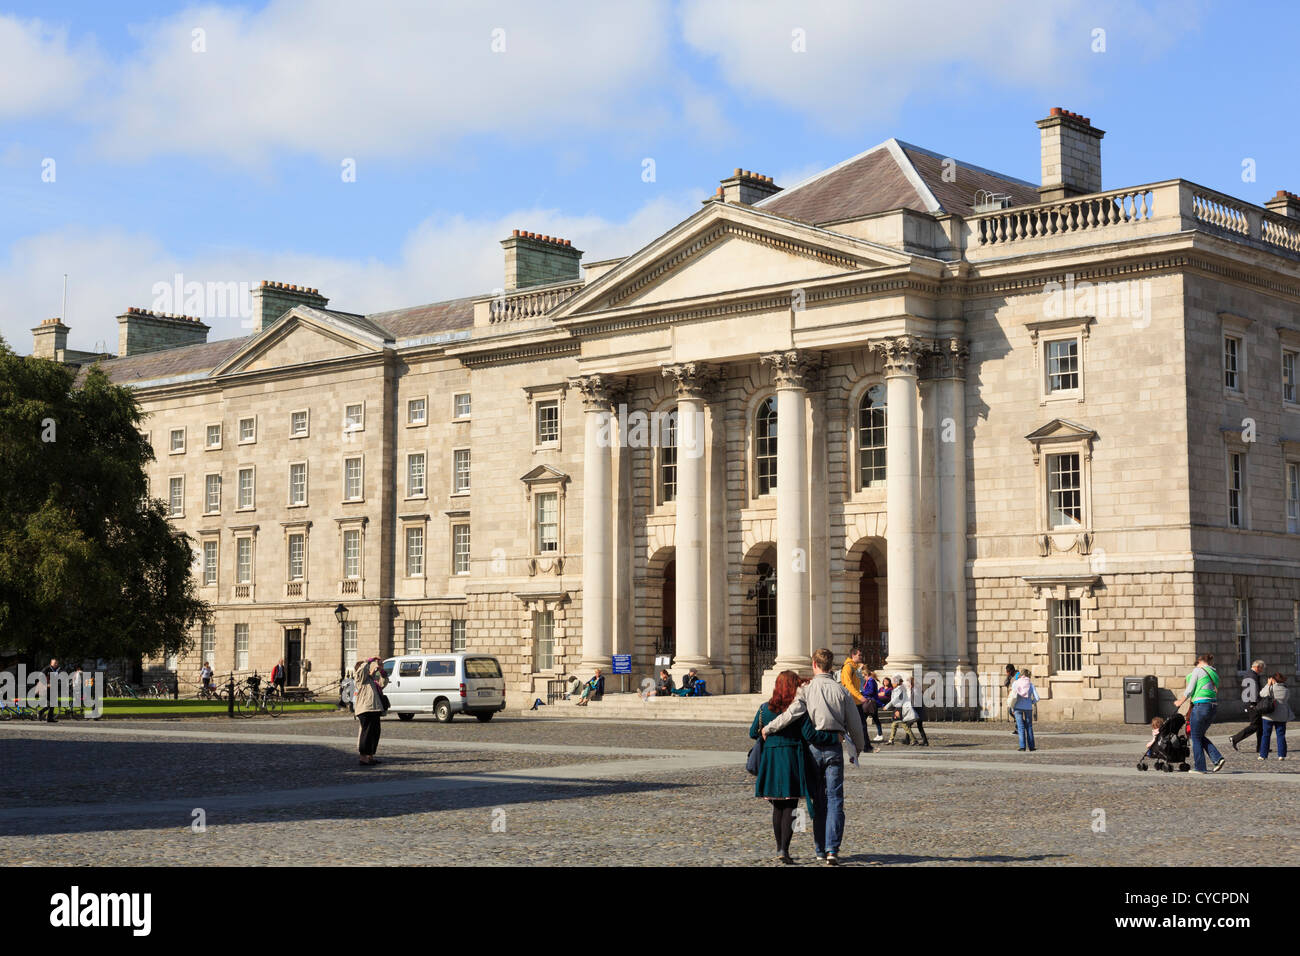 La chapelle de la place du Parlement sur l'Université de Trinity College de Dublin en campus College Green Dublin Irlande Eire Banque D'Images